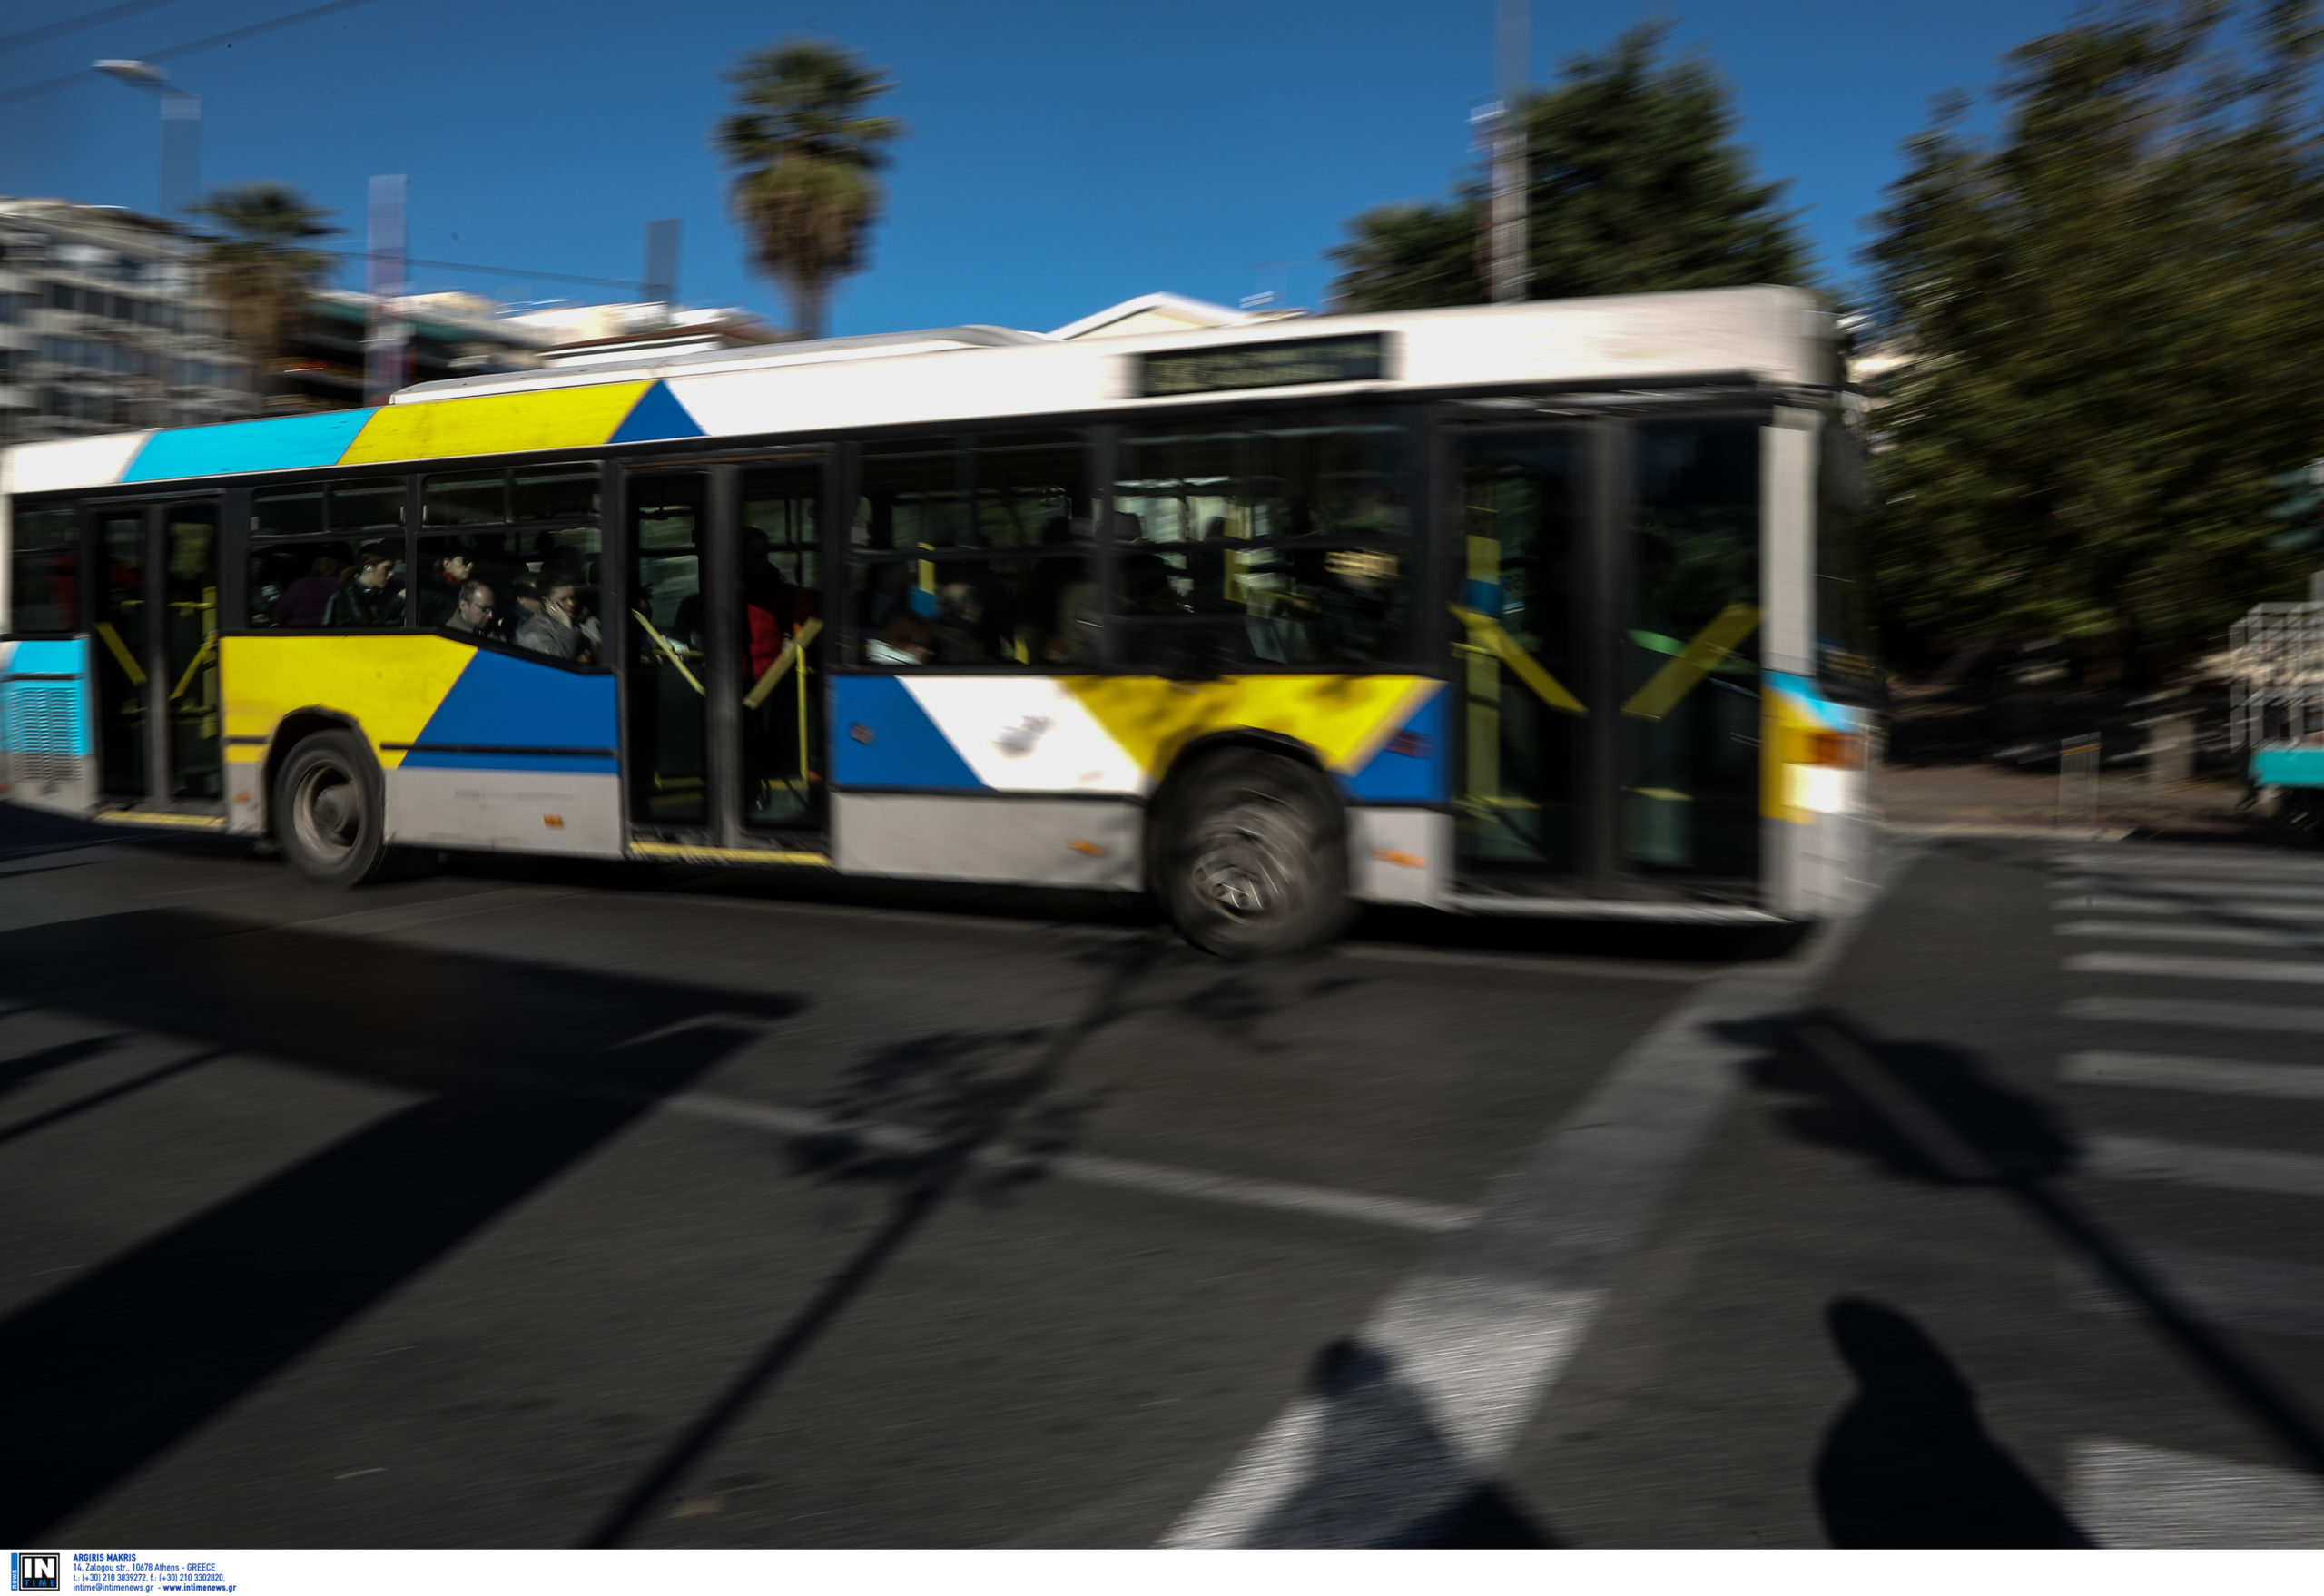 Άγιοι Ανάργυροι: Πέταξαν γλάστρα σε λεωφορείο με επιβάτες – «Τρομοκρατήθηκα και ενημέρωσα την αστυνομία» λέει ο οδηγός